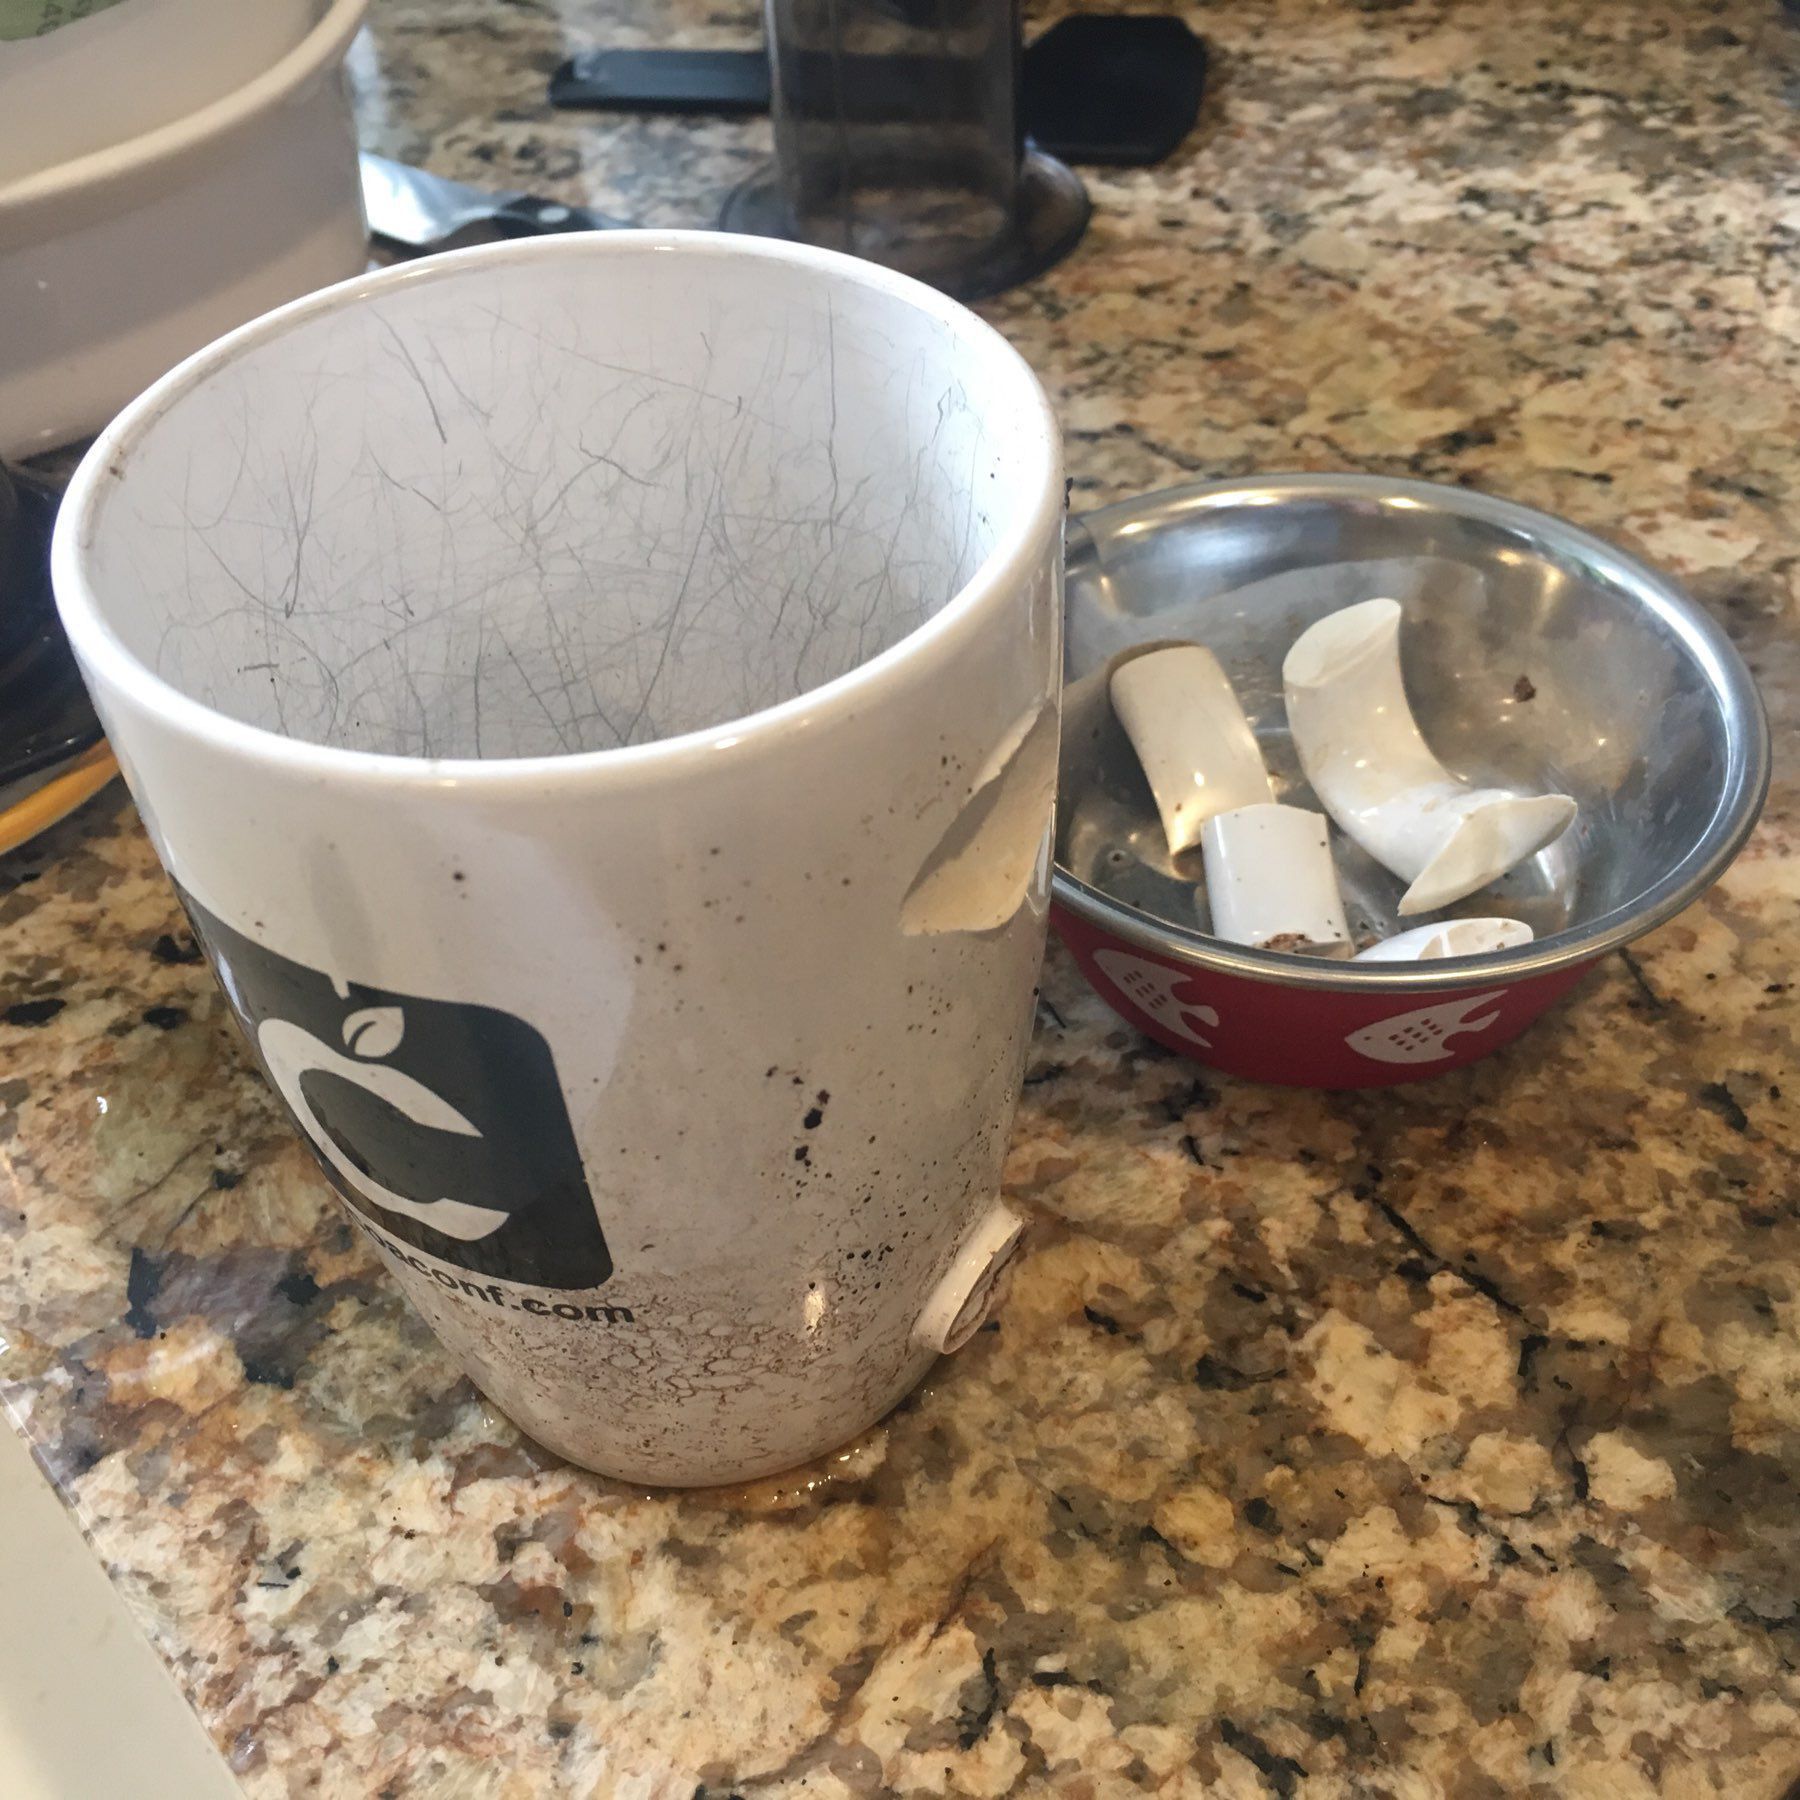 Broken Cocoaconf mug